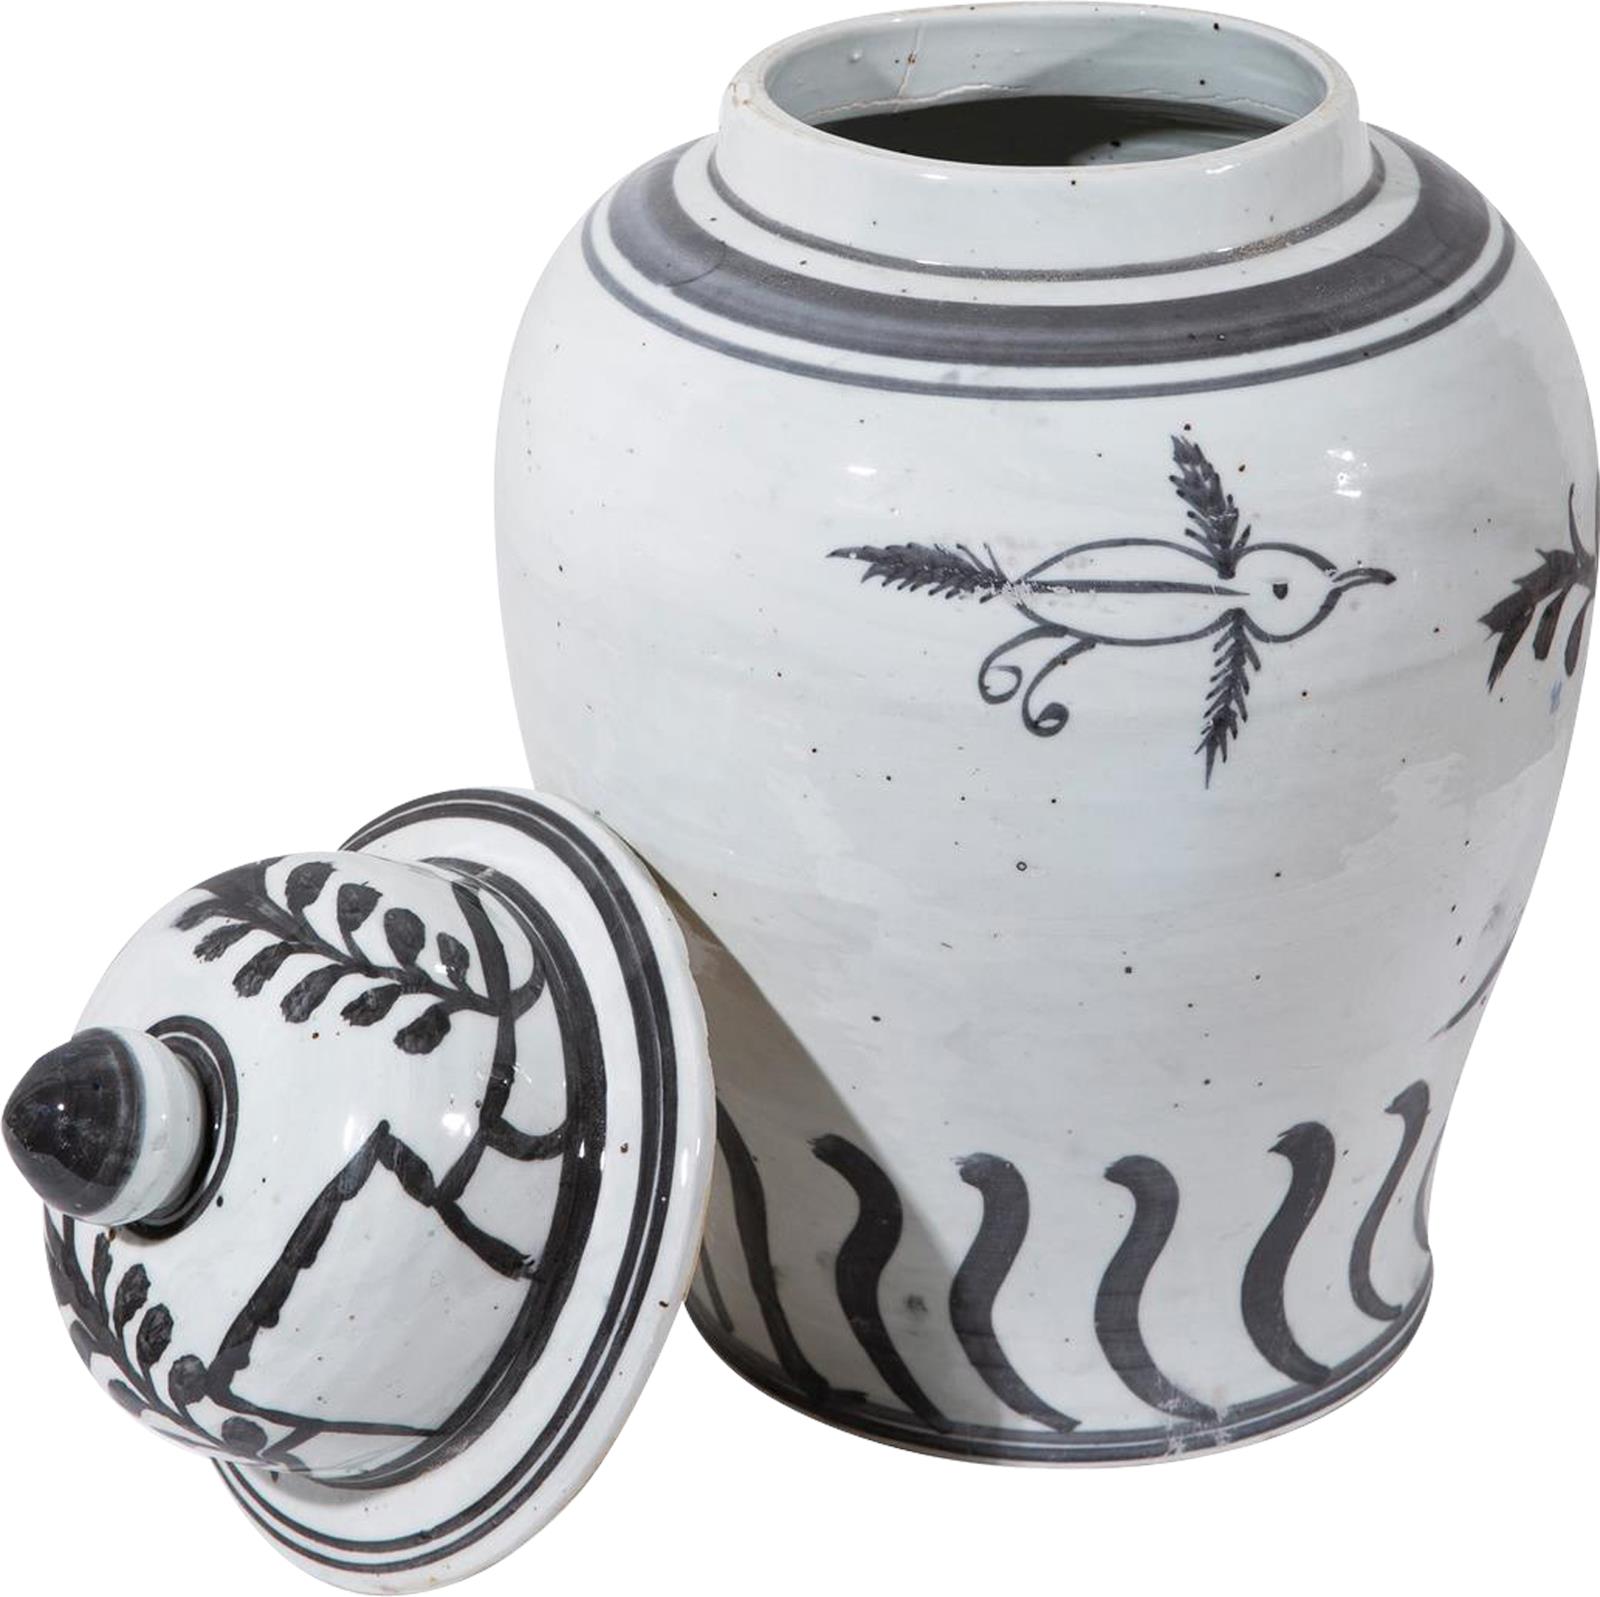 Temple Jar Vase Flying Bird Black Vintage White Crackle Ceramic Han-Image 3